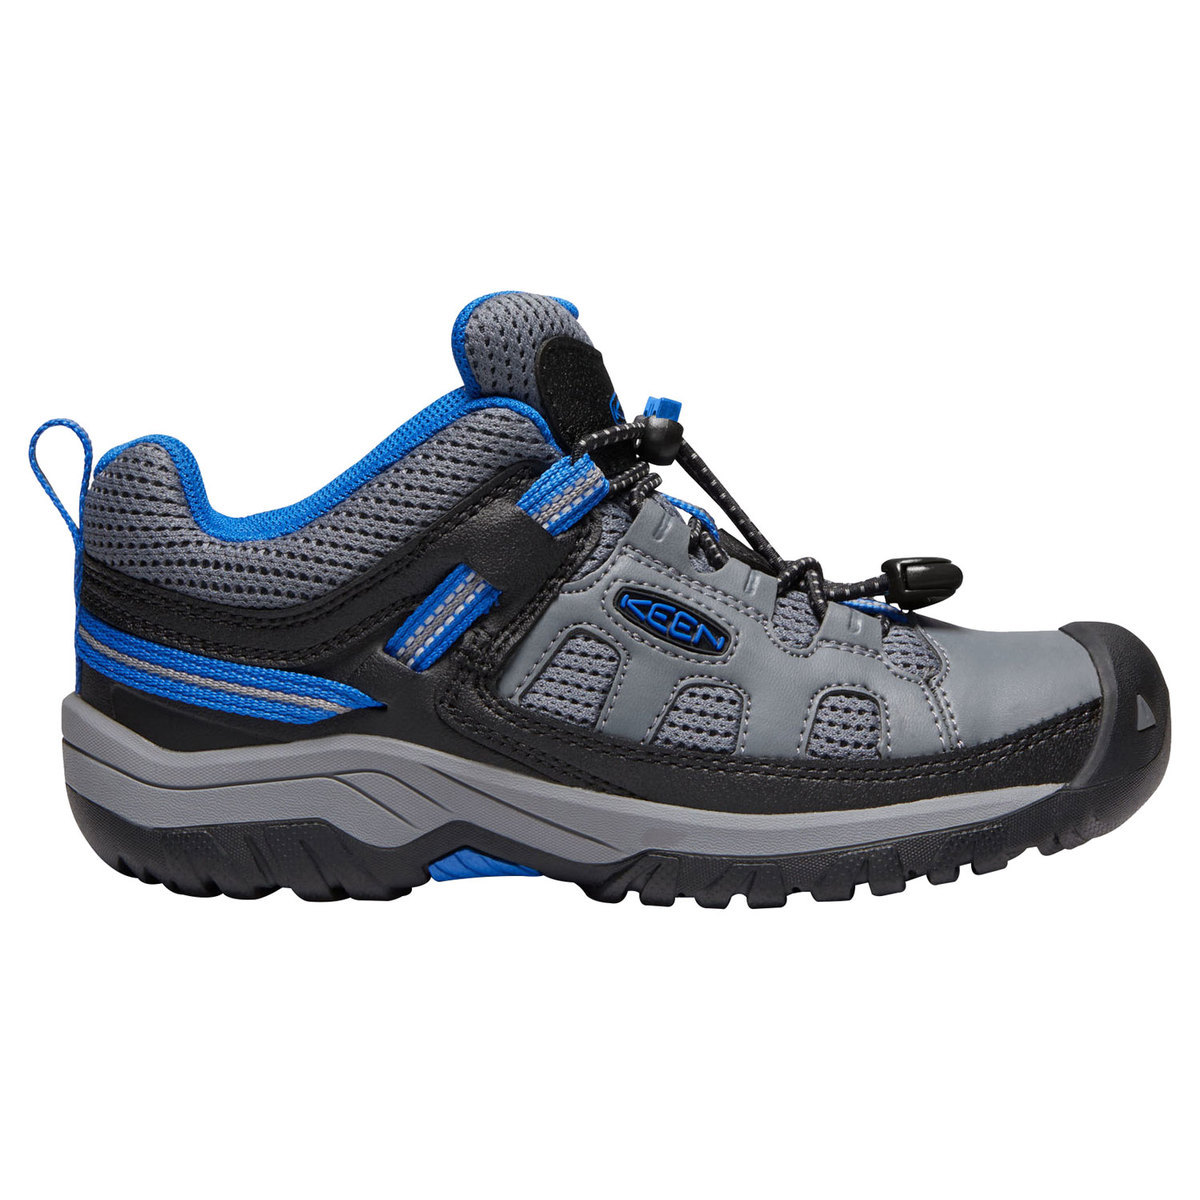 KEEN Youth Targhee Waterproof Low Hiking Shoes - Steel Gray - Size 2 ...